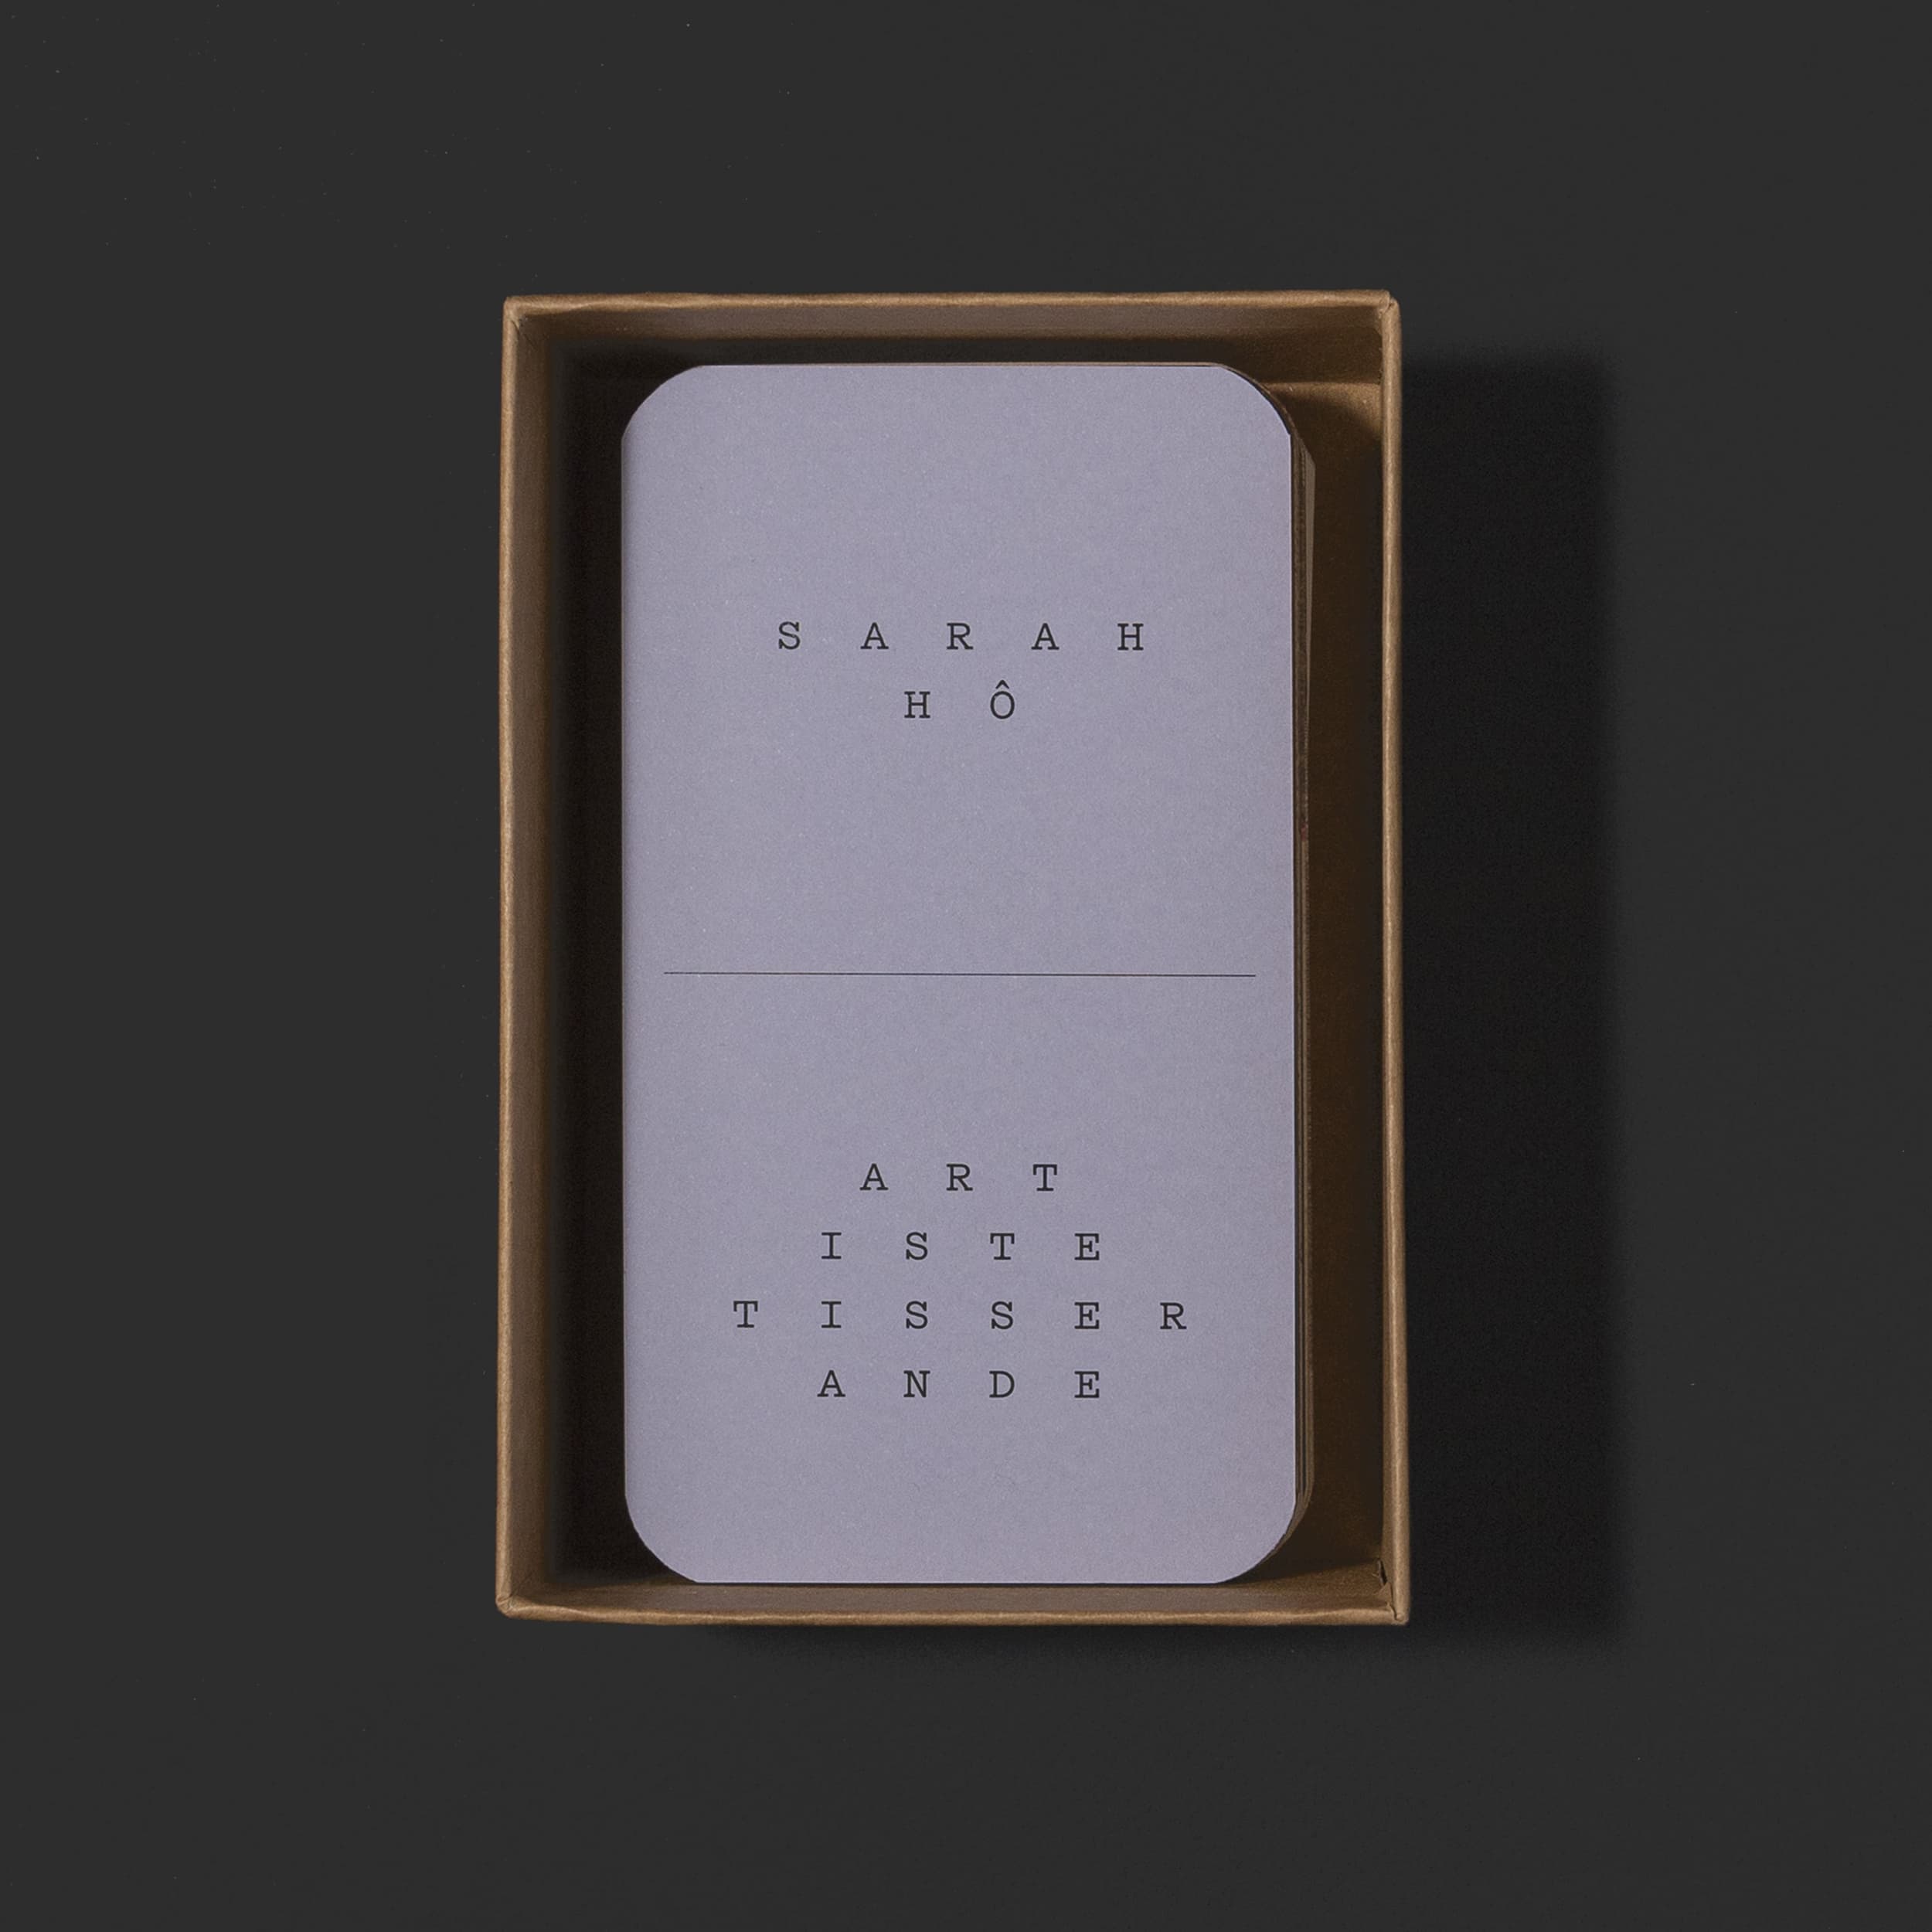 Boîte ouverte avec une carte d'introduction violette, on peut y lire "Sarah Hô, artiste tisserande"